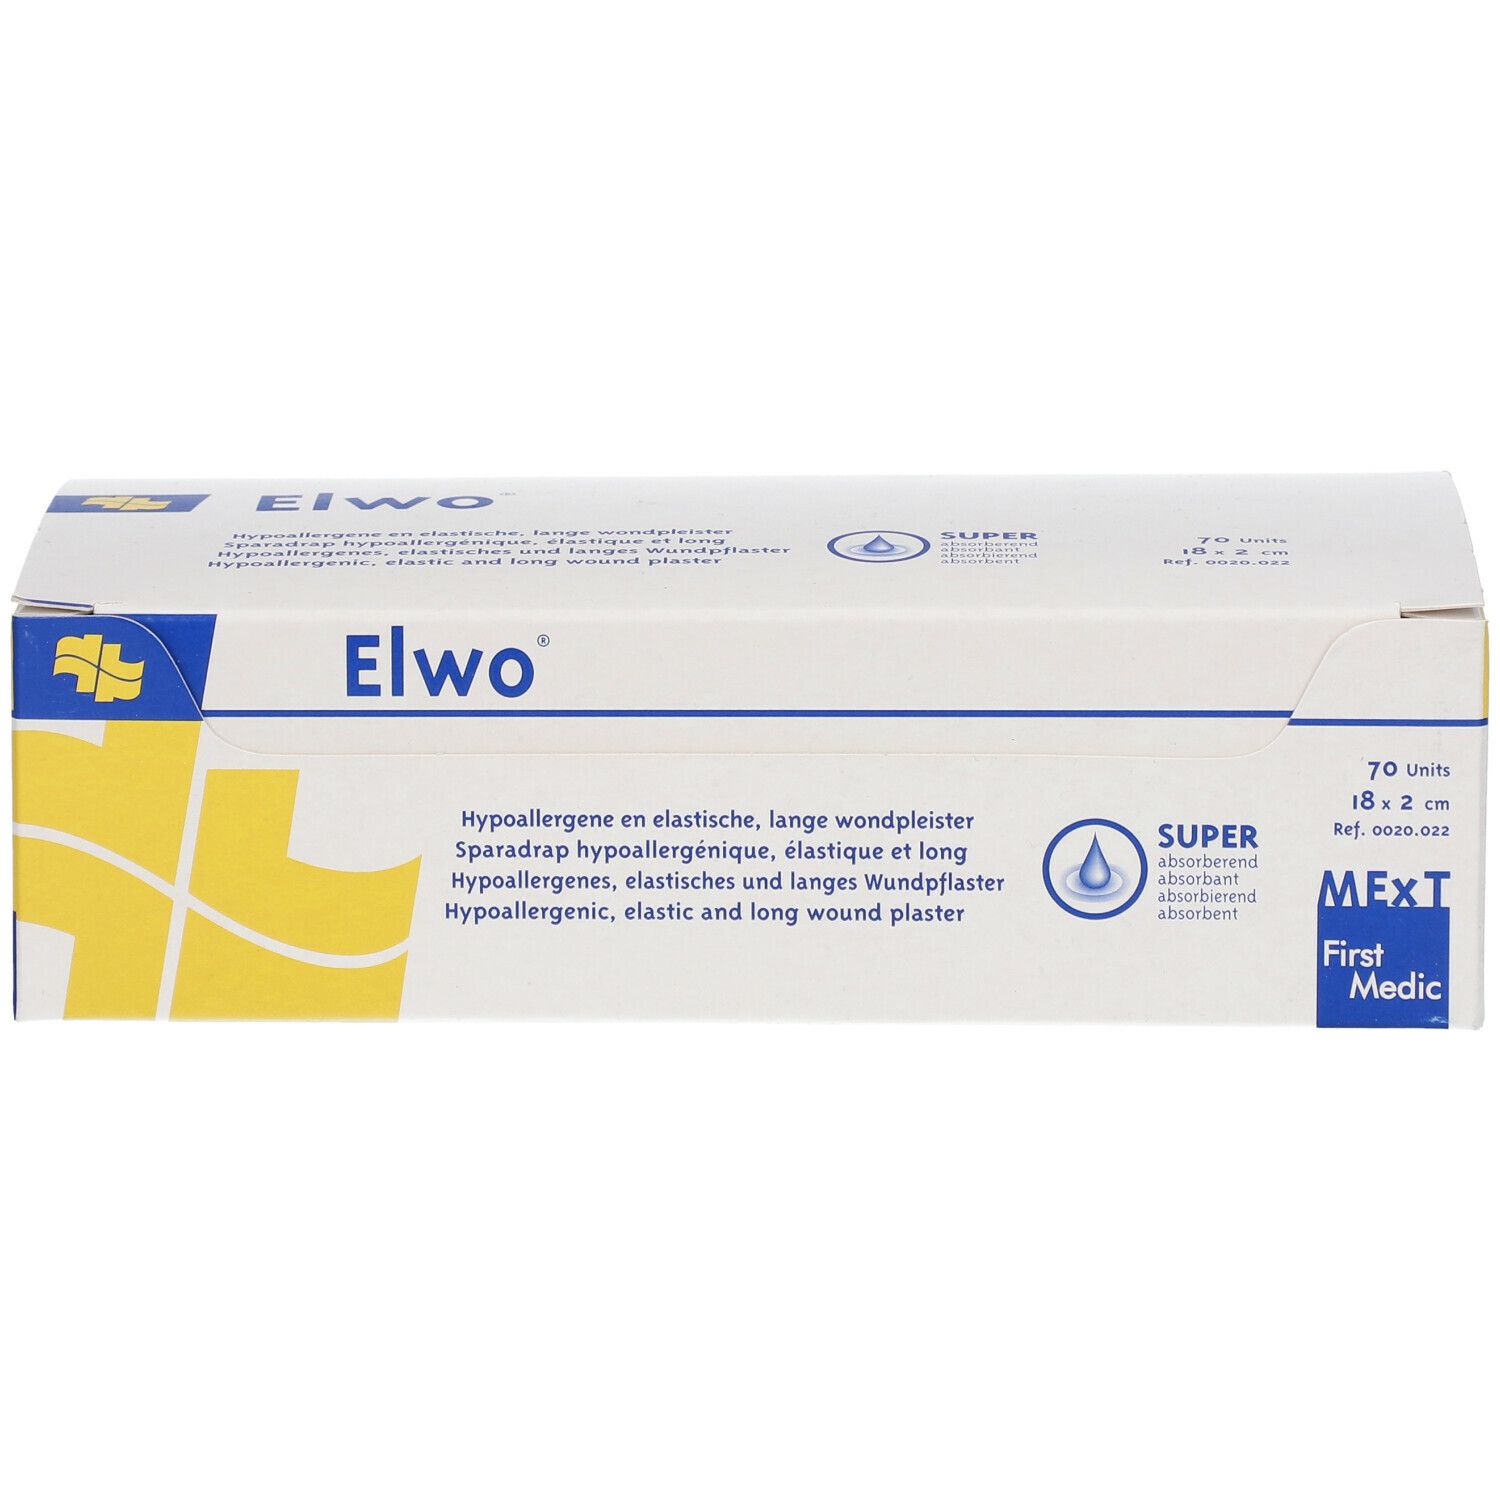 Elwo® elastisches und hypoallergenes Wundpflaster 18 x 2 cm